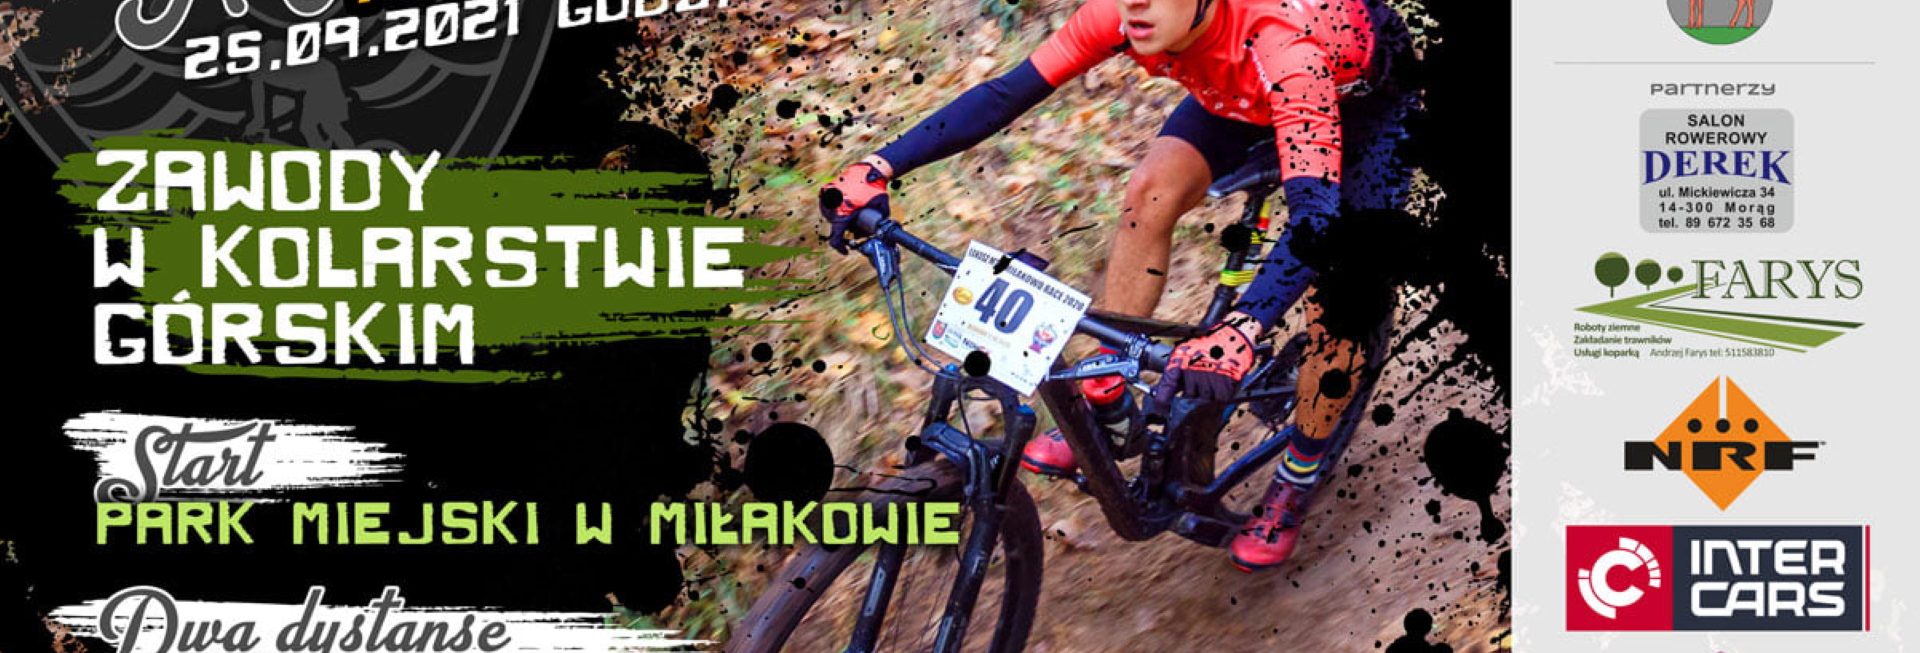 Plakat graficzny zapraszający do Miłakowa na zawody w kolarstwie górskim MTB Miłakowo 2021.